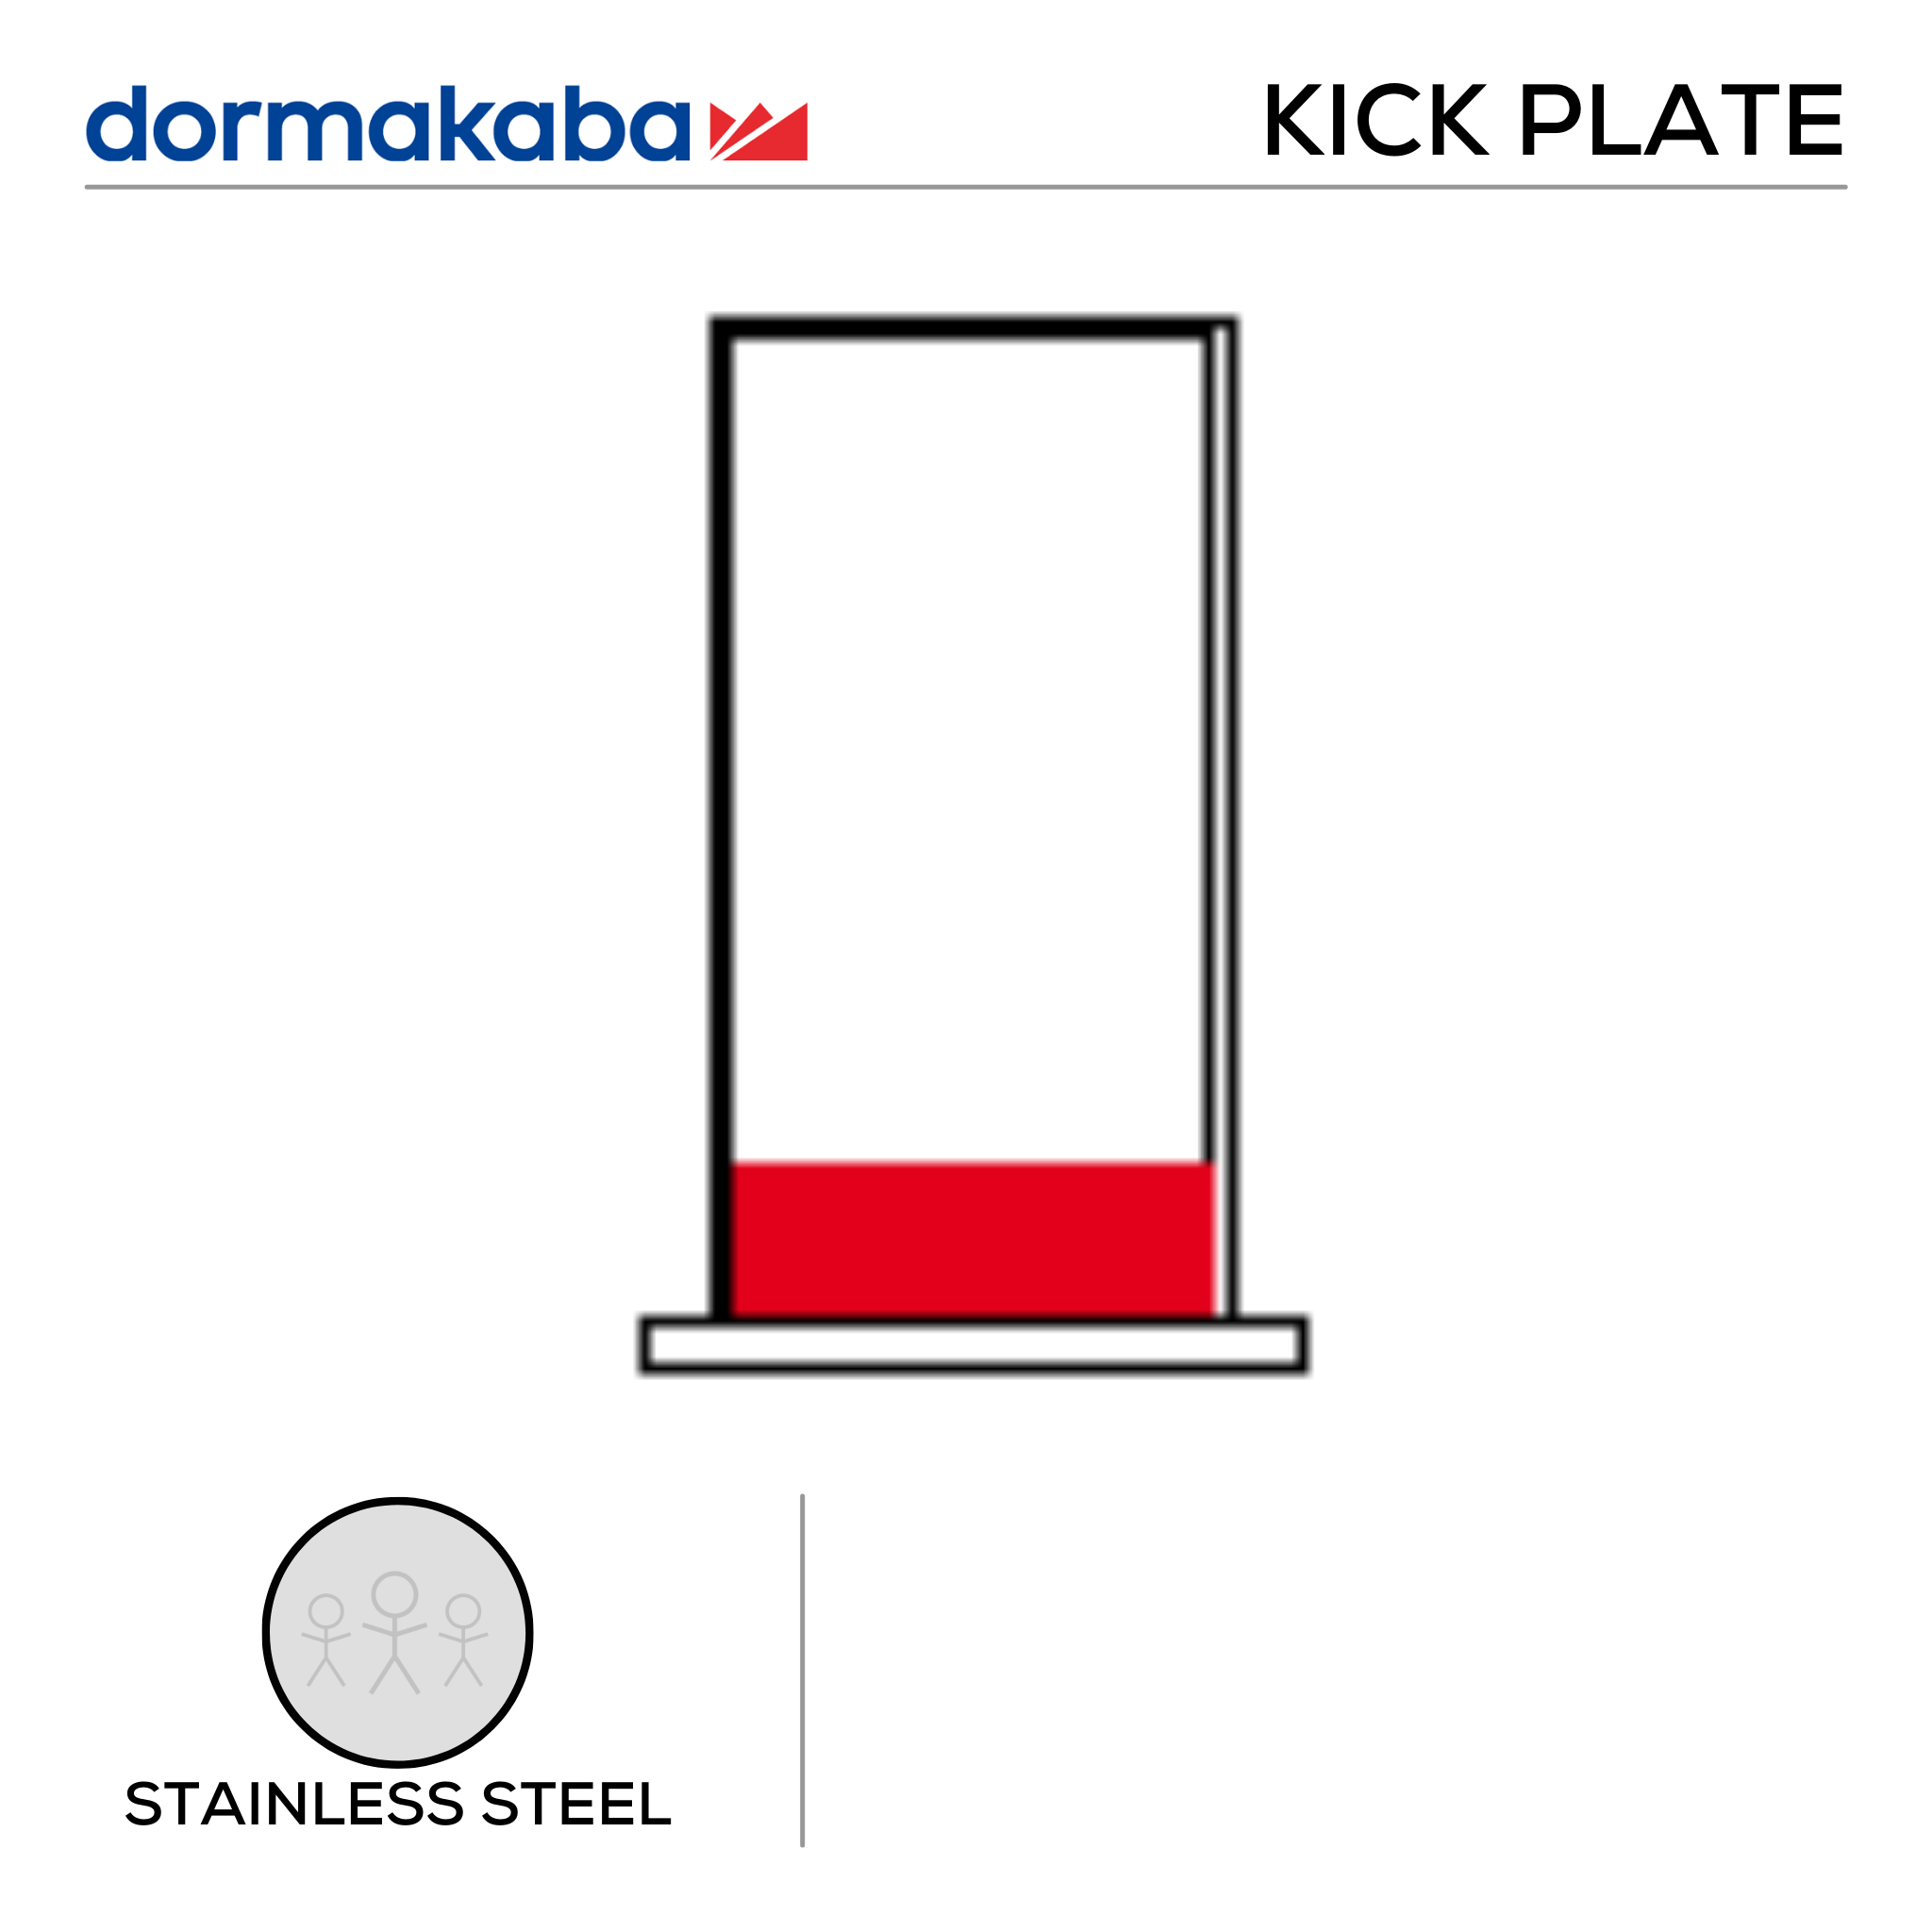 DKP-SS-300, Door Width Kick Plate, Door Width, 300mm (w) x 1.2mm (t), Right, Stainless Steel, Dormakaba